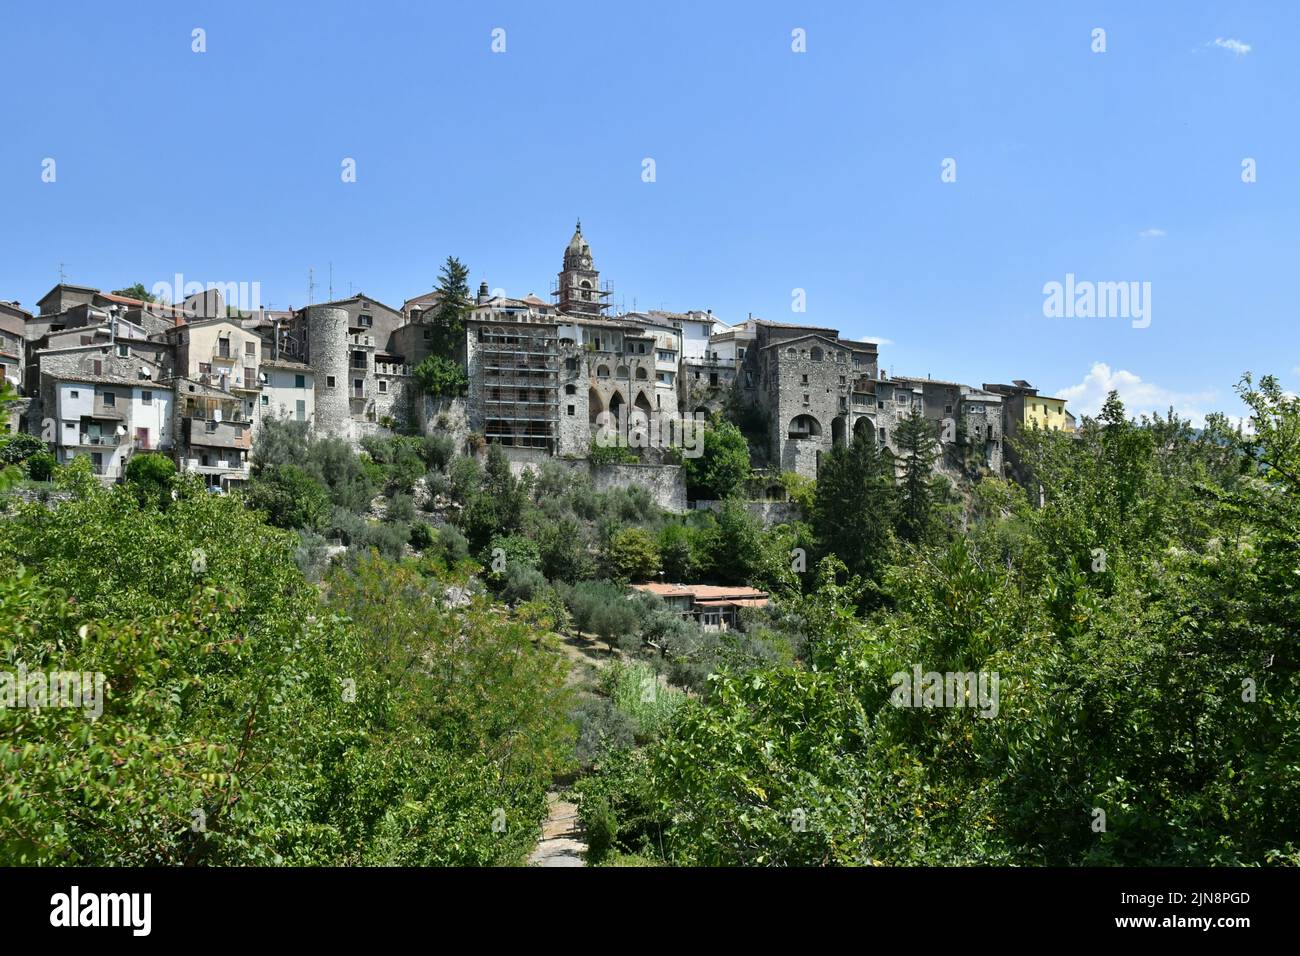 Die Landschaft rund um Cusano Mutri, ein mittelalterliches Dorf in der Provinz Benevento in Italien. Stockfoto